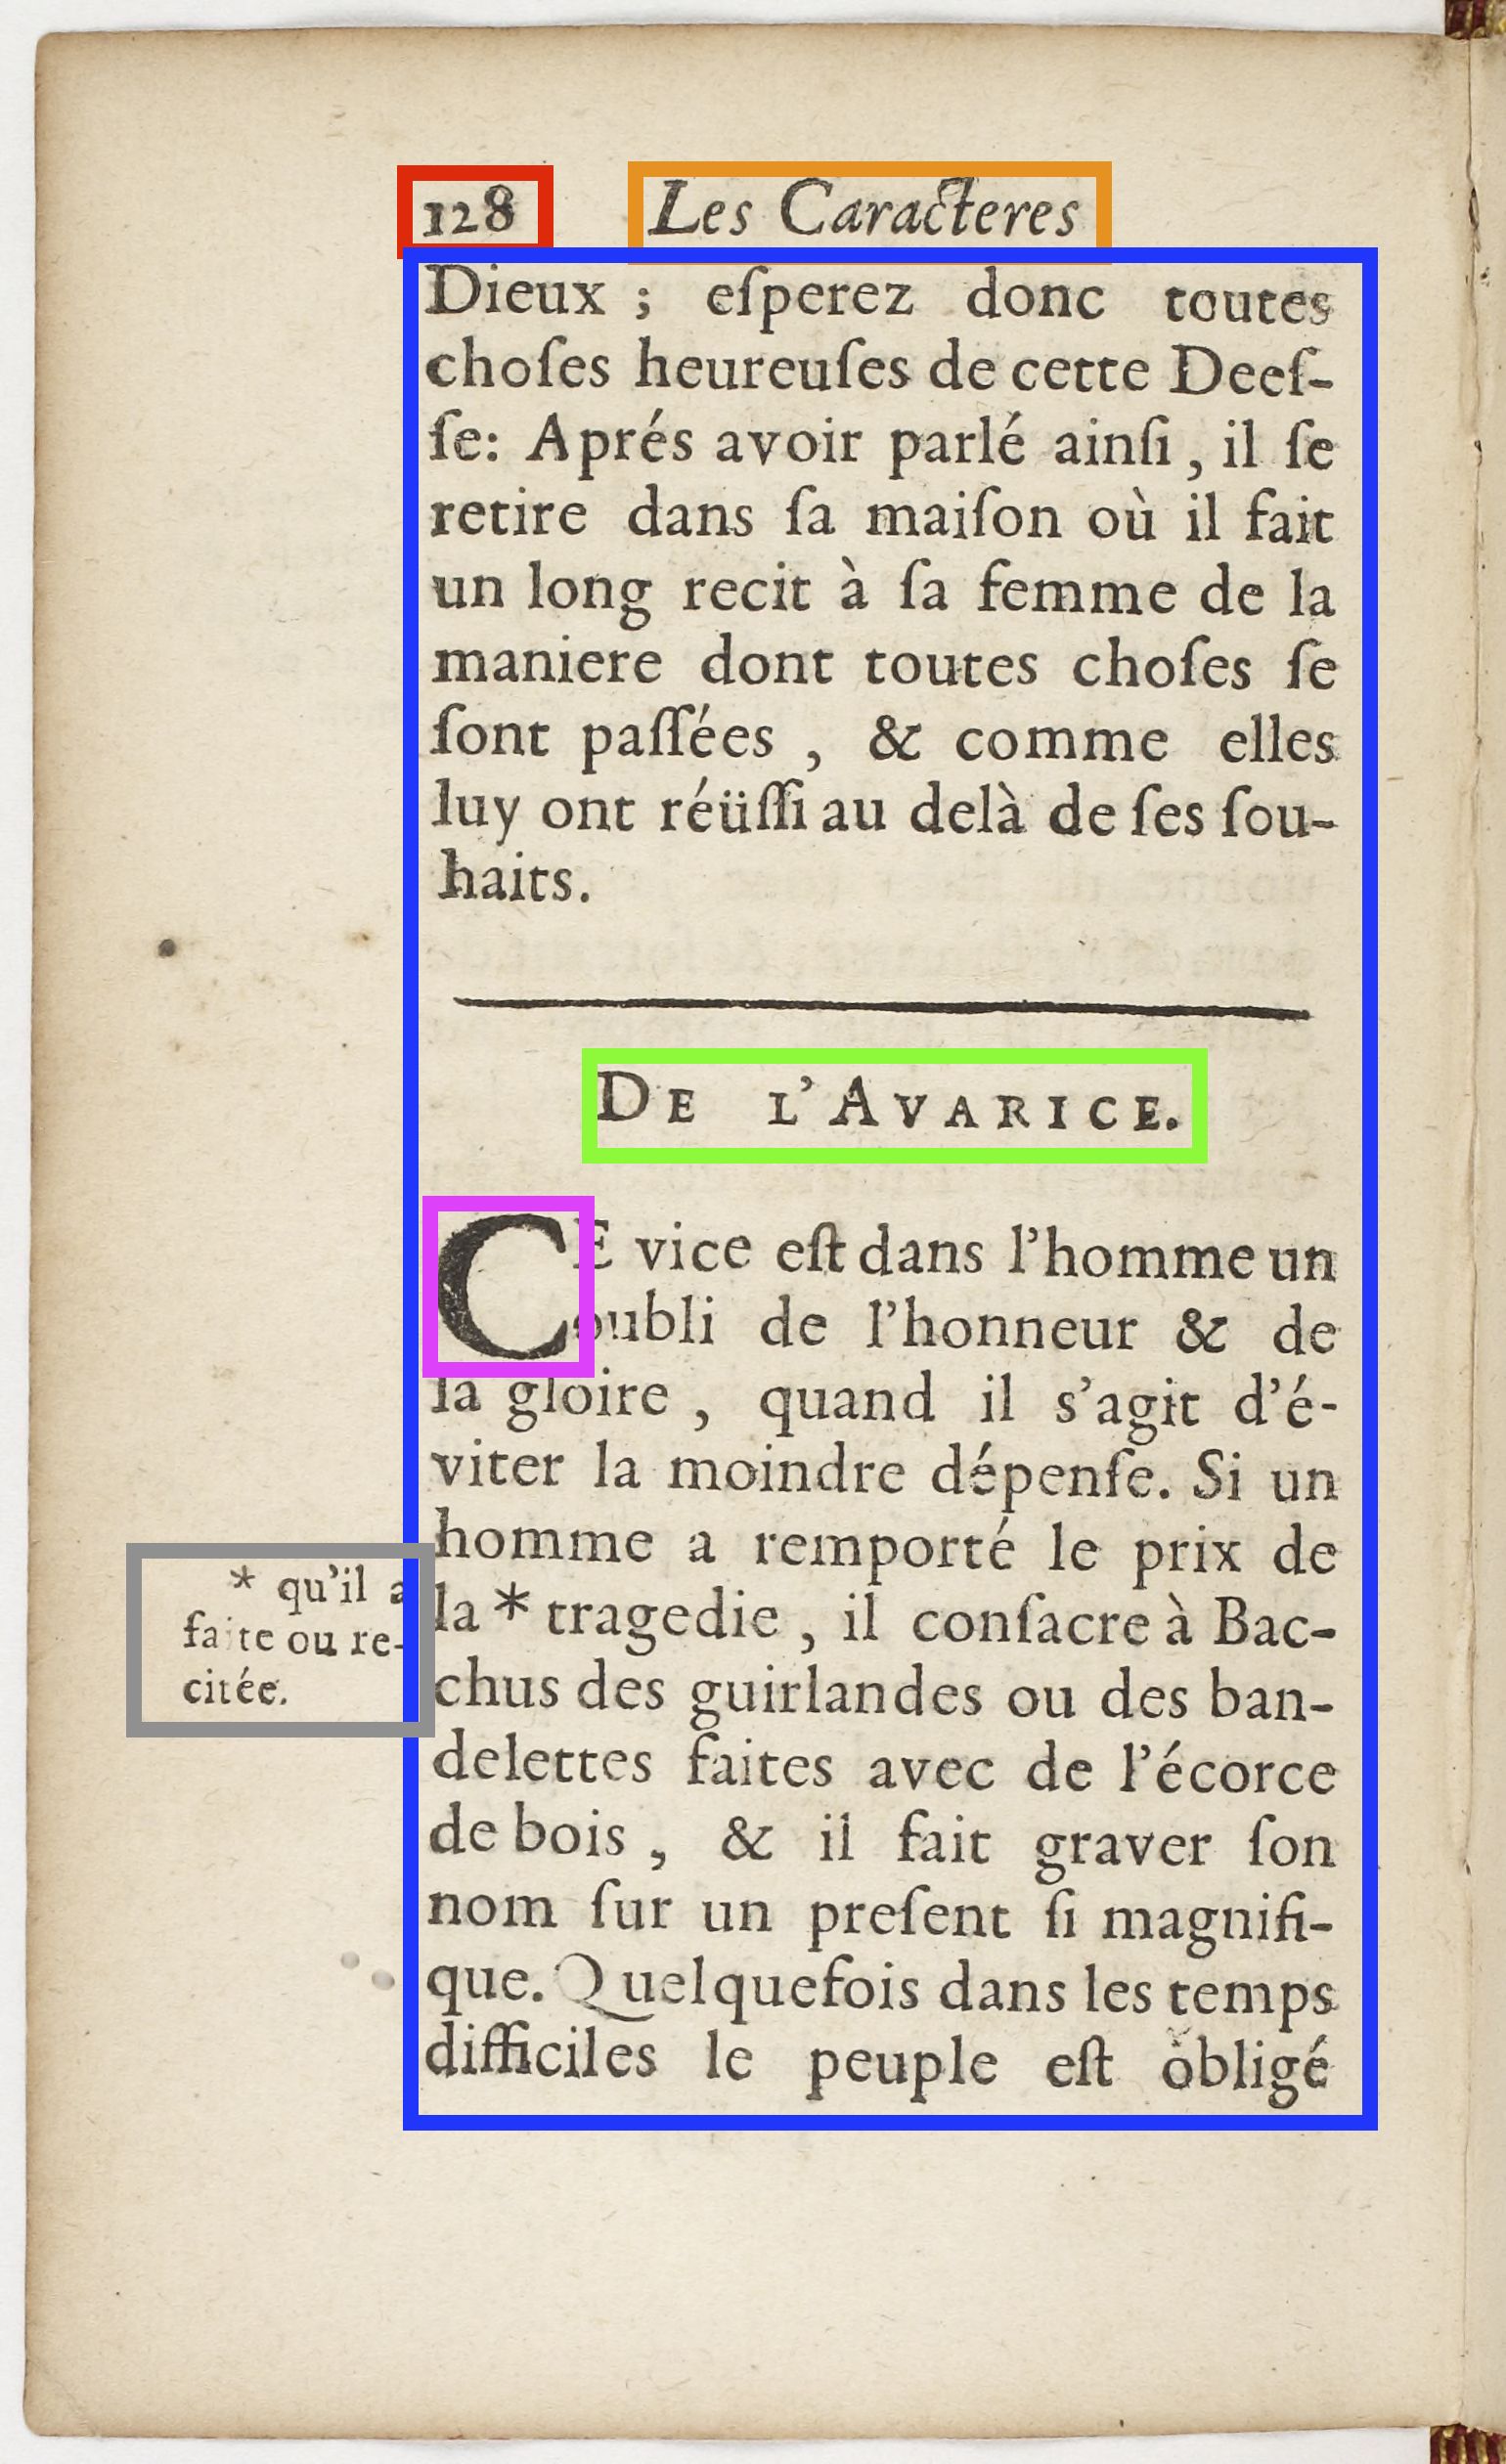 La Bruyère, Les Caractères, 1688, p. 128.